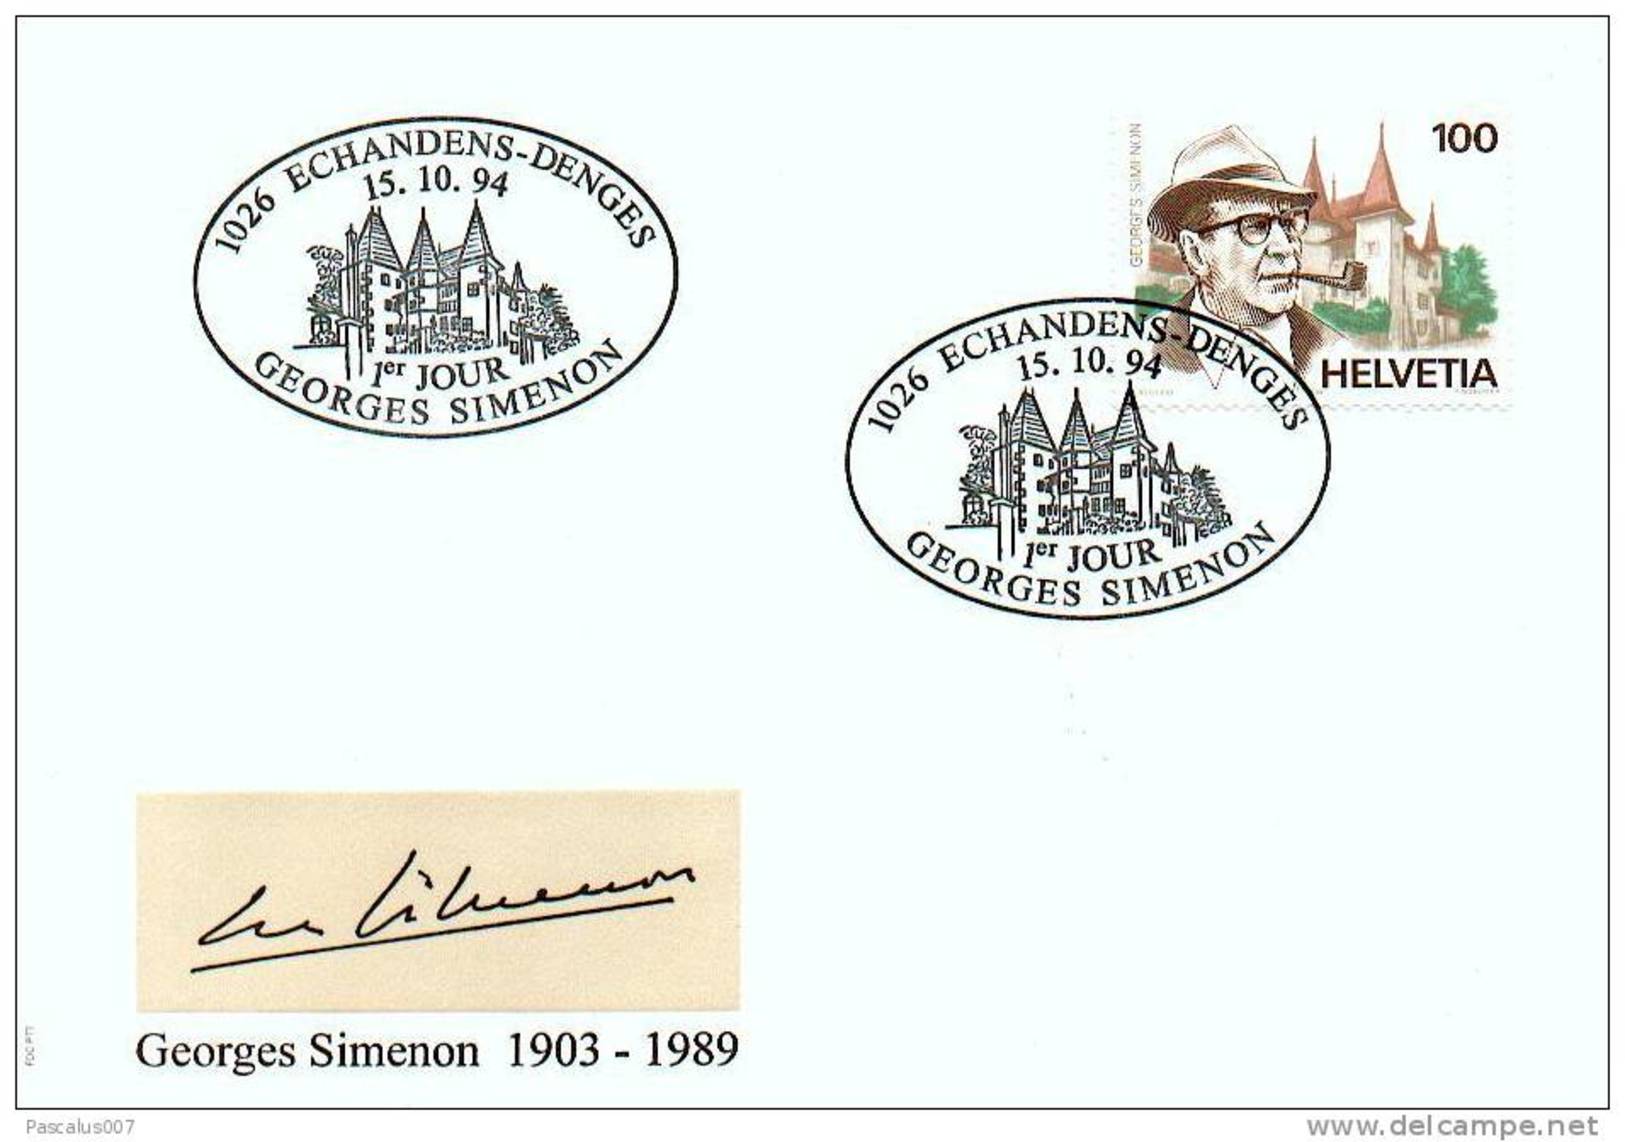 60011a - 1 - Enveloppe Souvenir - Cs - Hk 2579 - Simenon Georges - écrivain - émission Suisse - Lettres & Documents